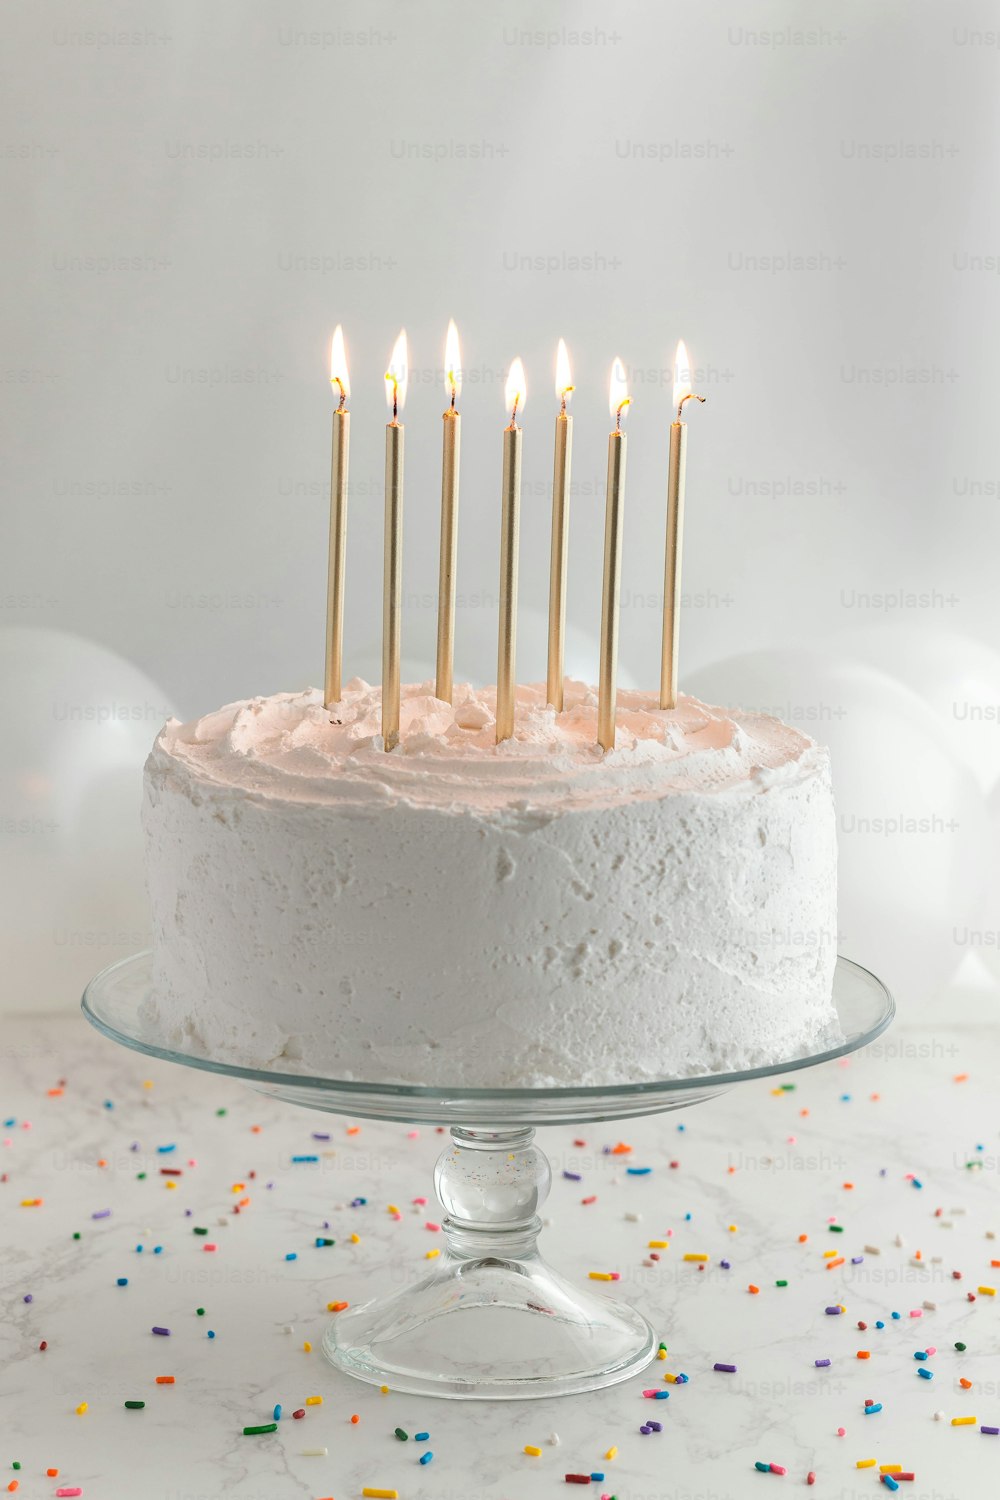 하얀 설탕 프로스팅과 촛불이 켜진 생일 케이크